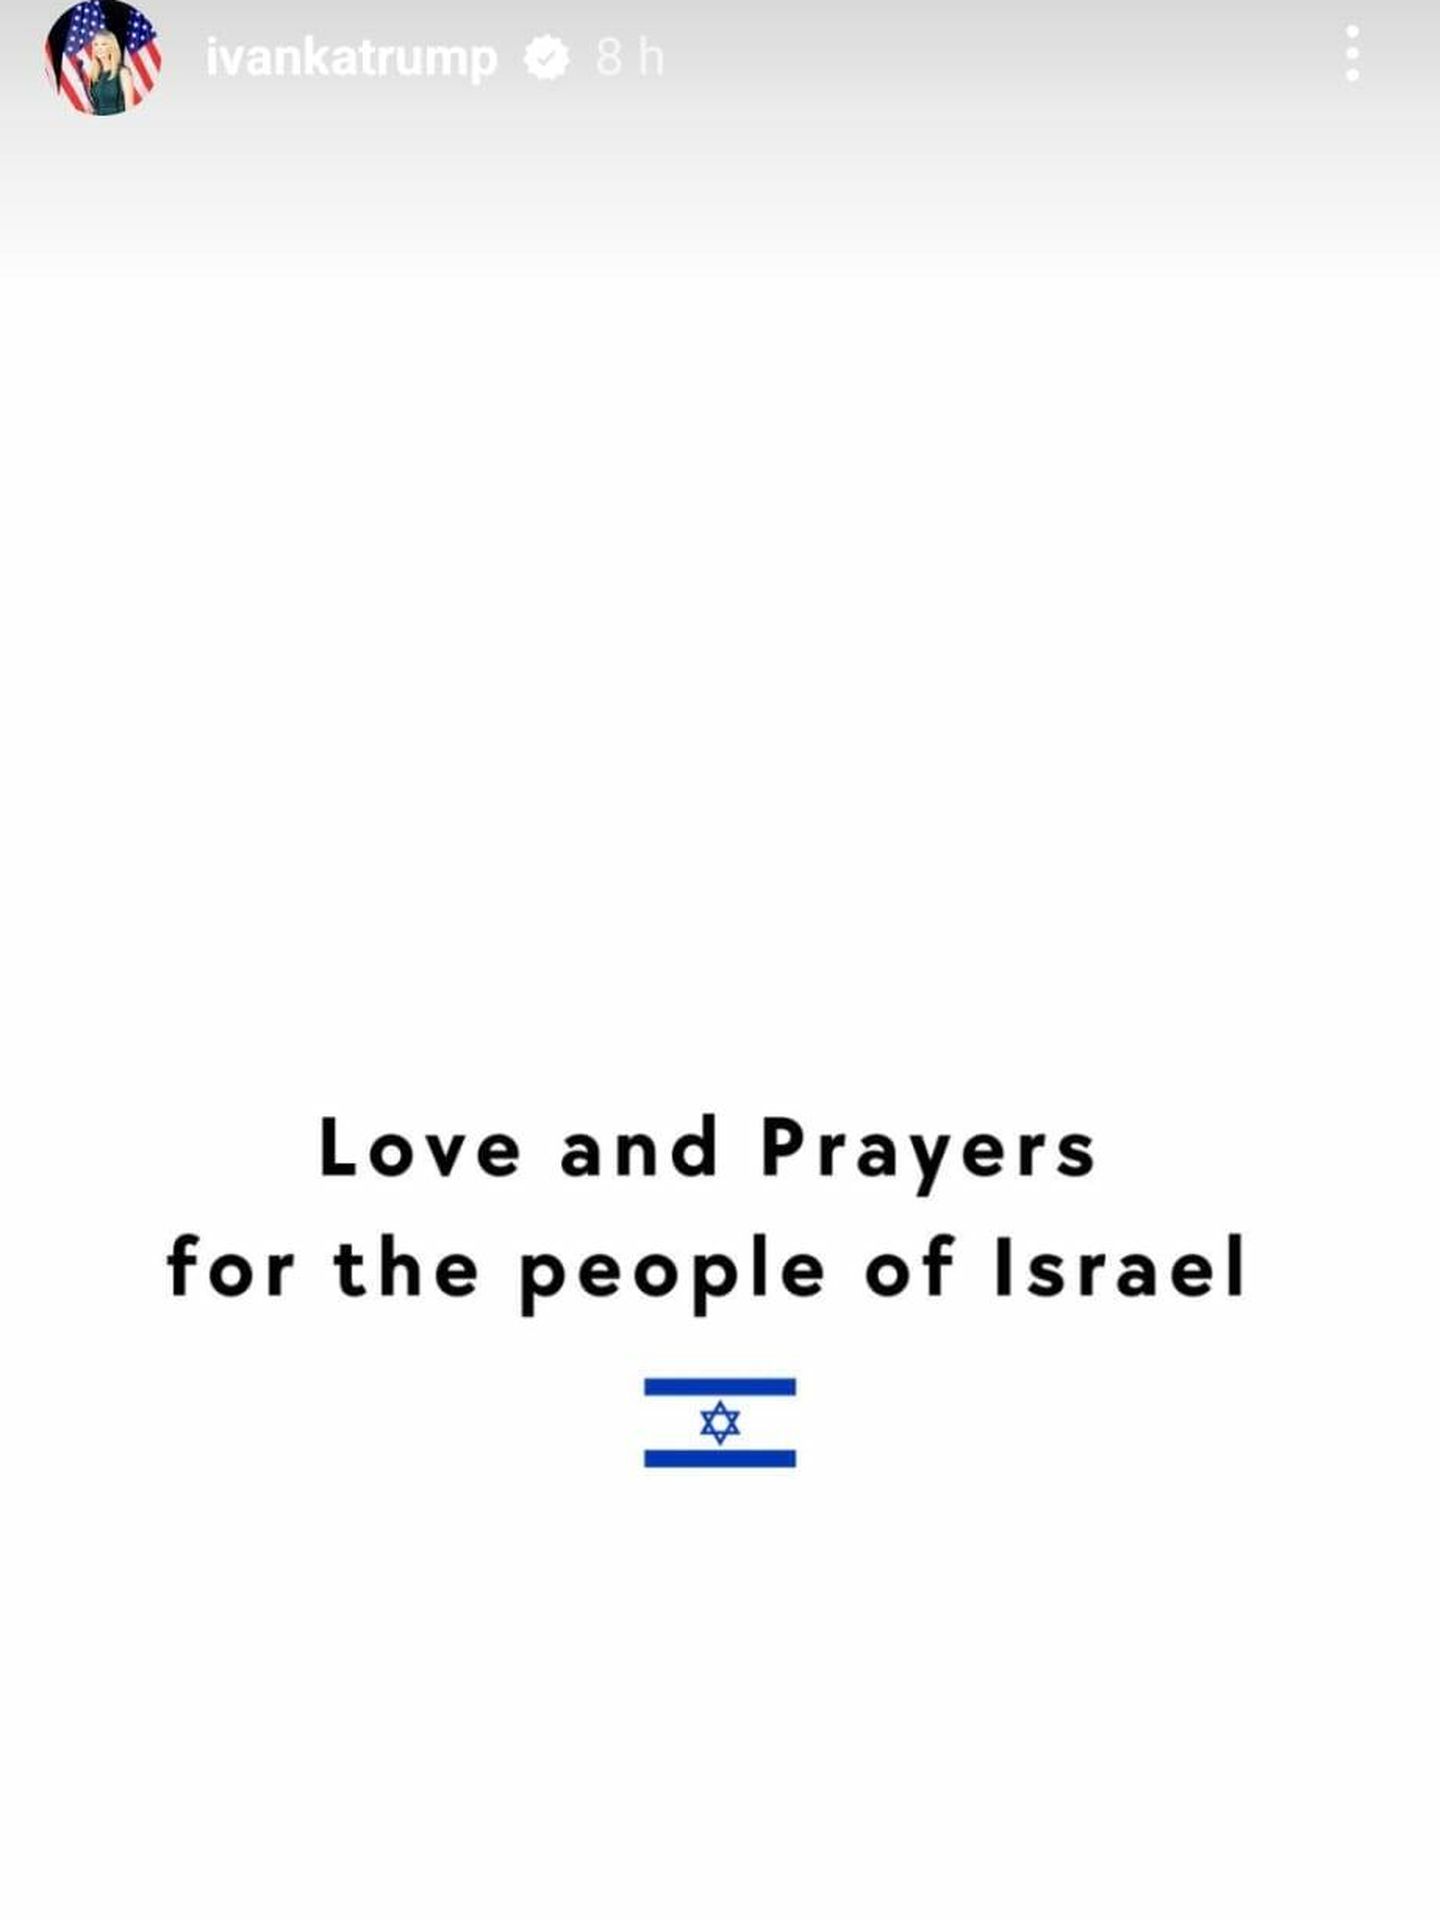 Ivanka Trump ha mandado sus deseos al pueblo israelí. (Instagram/@ivankatrump)